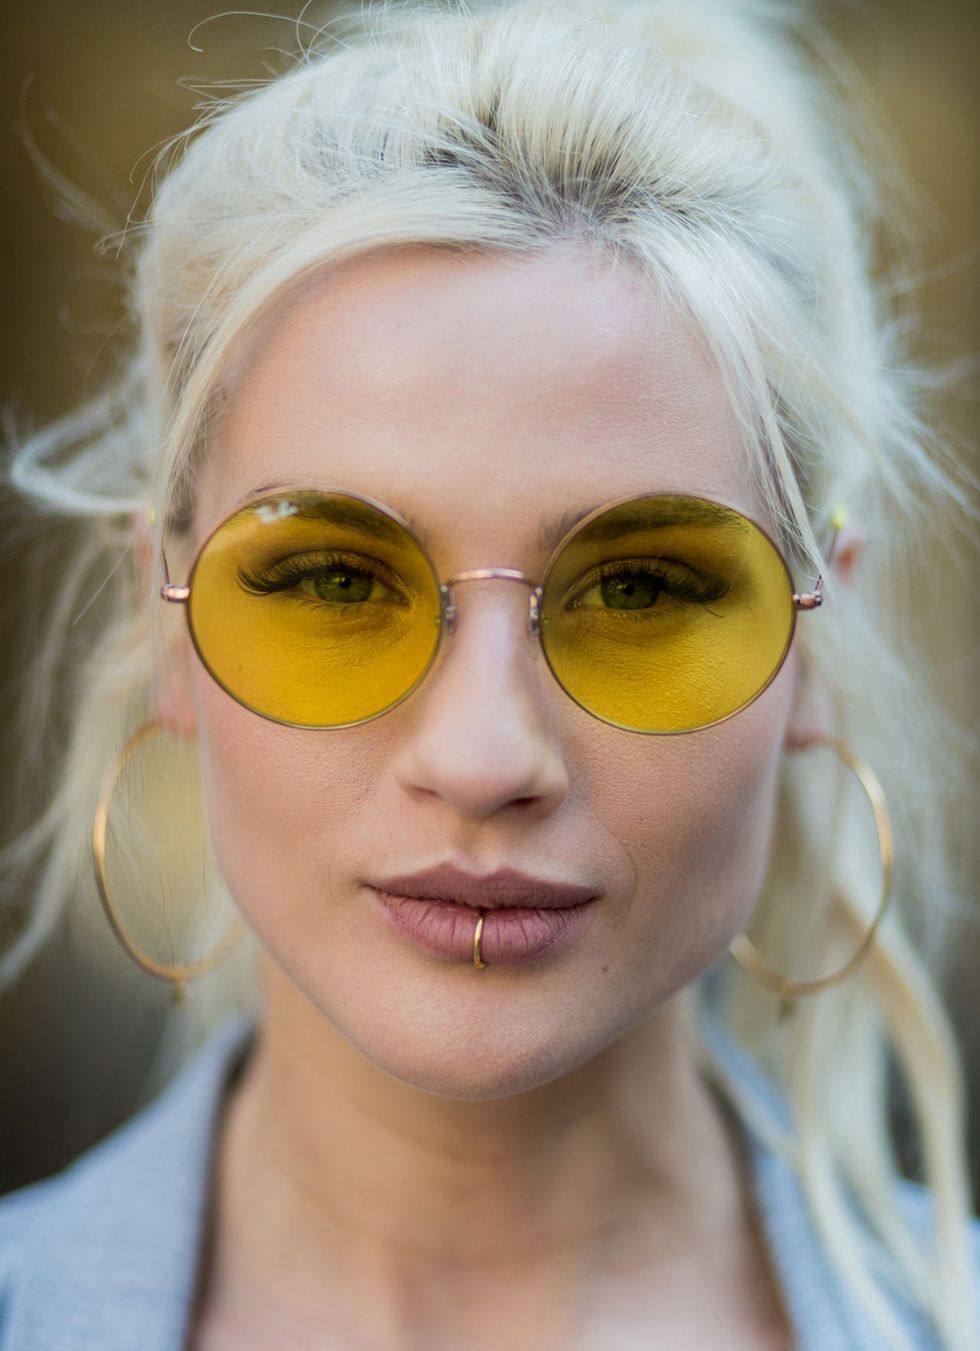 Gli occhiali a lenti gialle hanno un segreto di bellezza, quale?